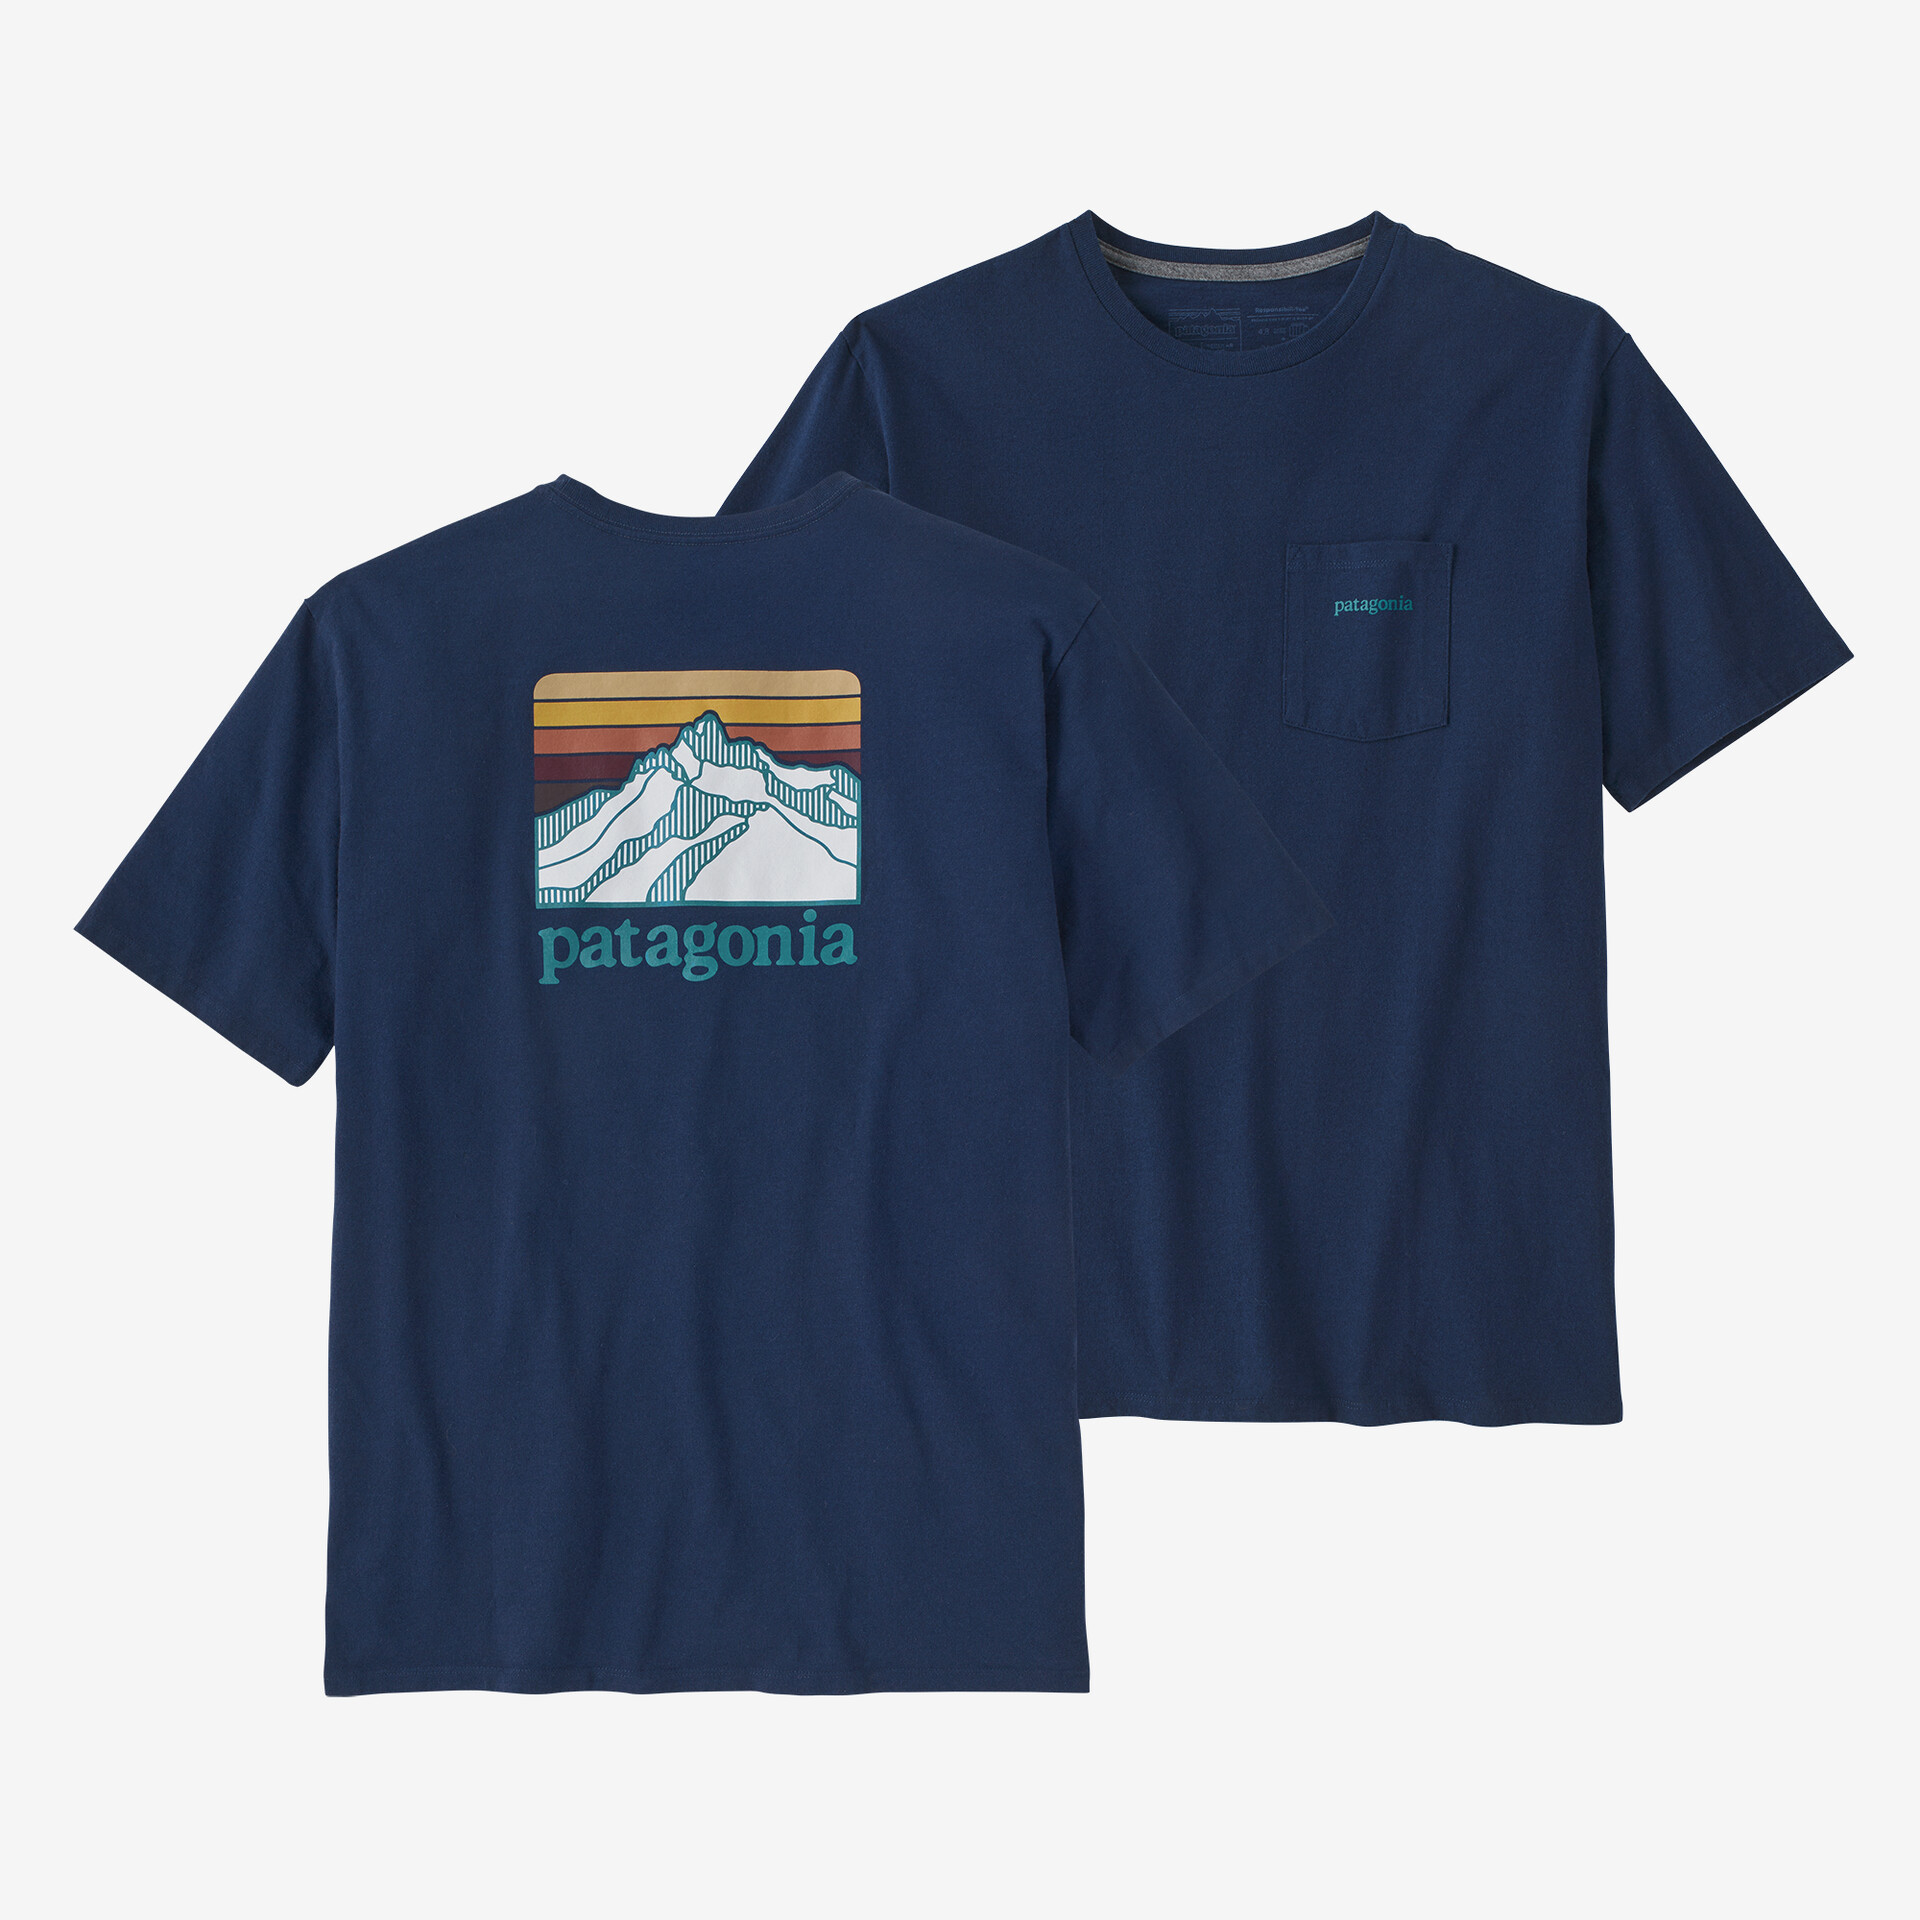 Мужская ответственная футболка с логотипом и карманом Patagonia, лагом синий мужская ответственная футболка с логотипом и карманом patagonia серый